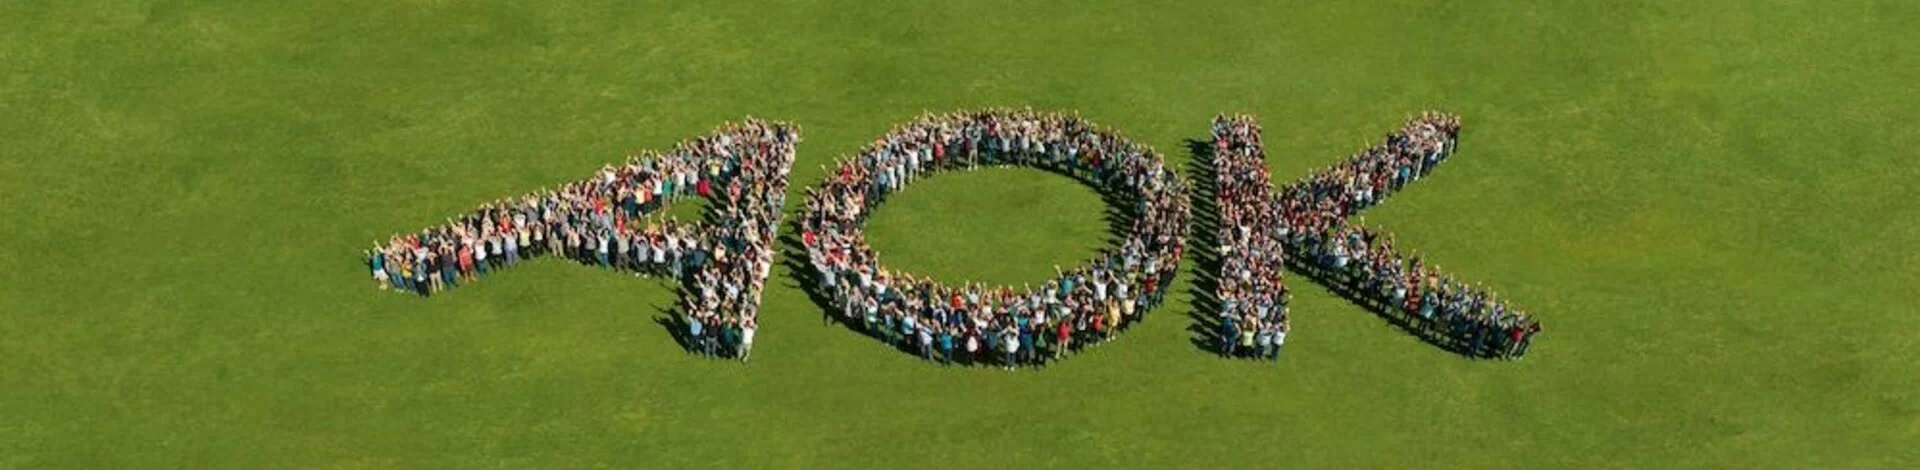 Hunderte Menschen bilden die Buchstaben A, O, K auf einer Rasenfläche. Aufnahme aus der Vogelperspektive.